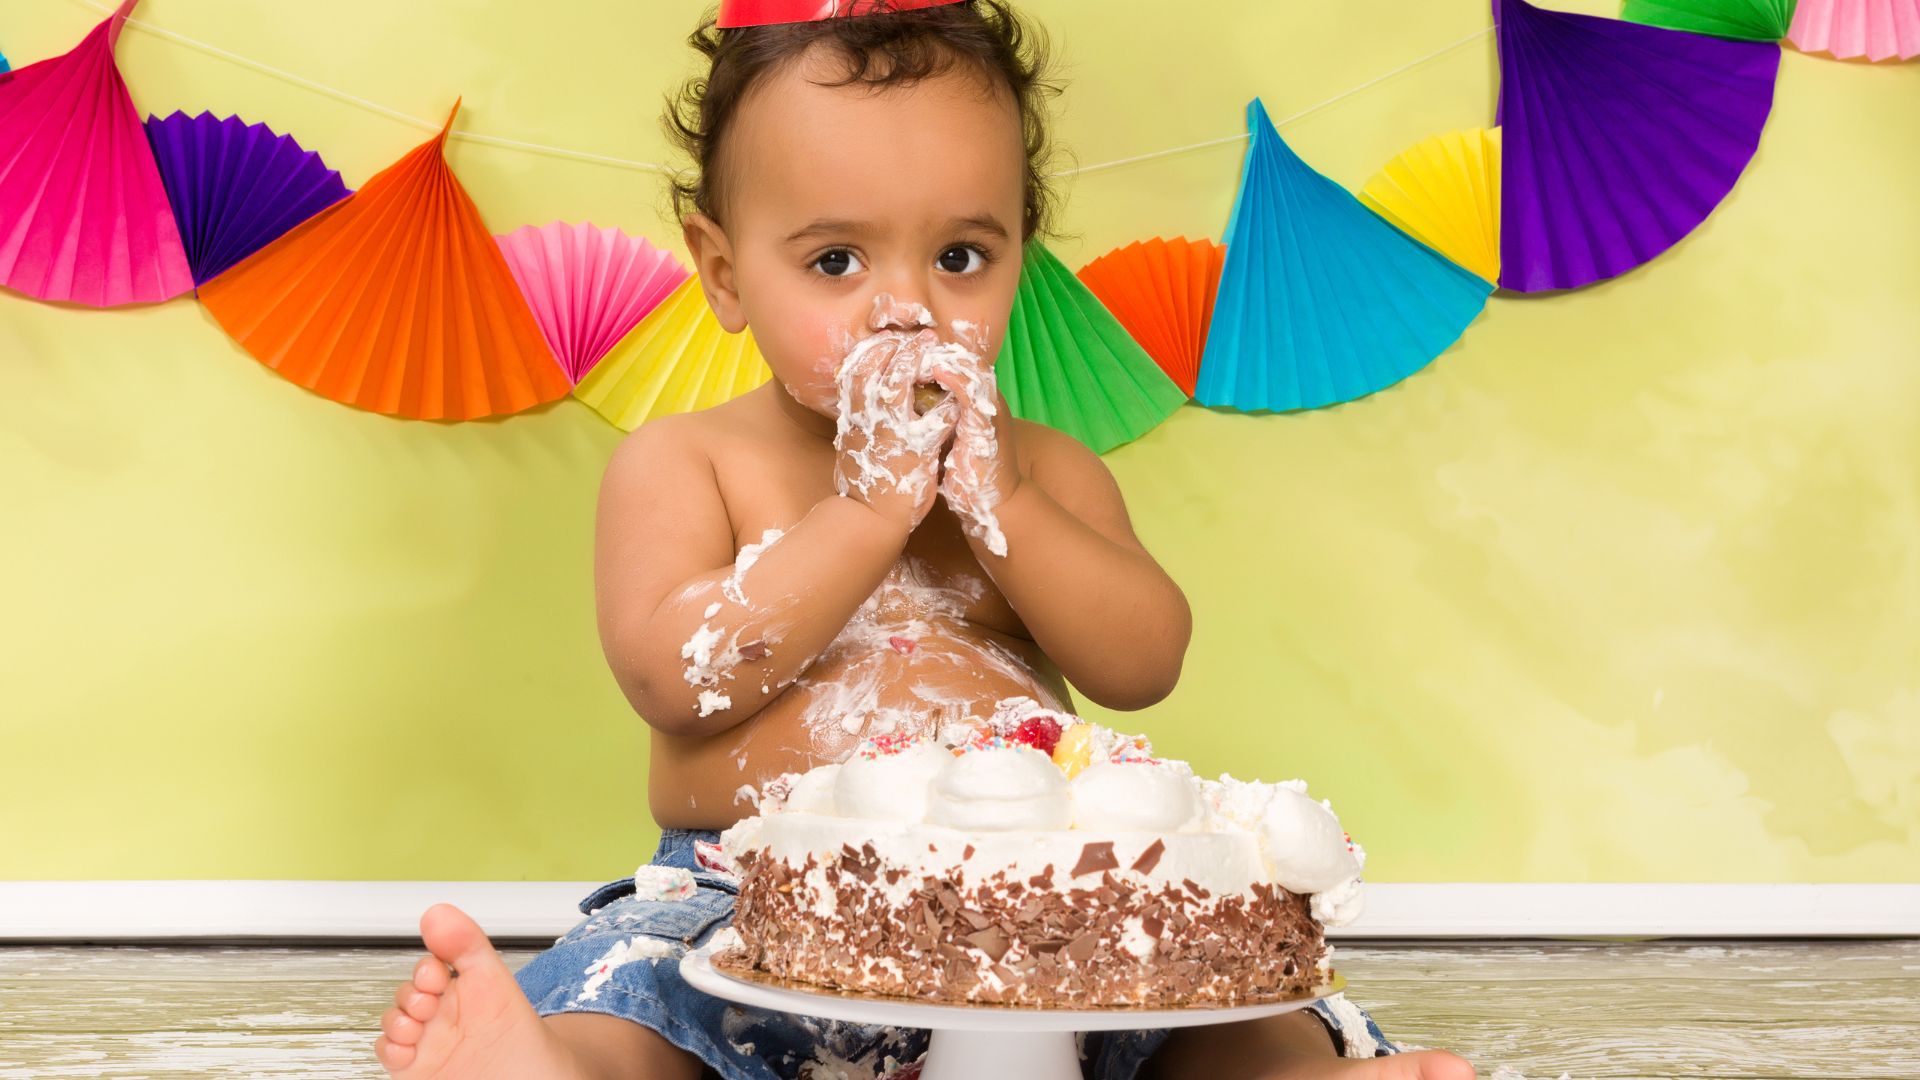 Imagem de um bebê comendo bolo de aniversário com a mão, atrás dele tem enfeites de festa.